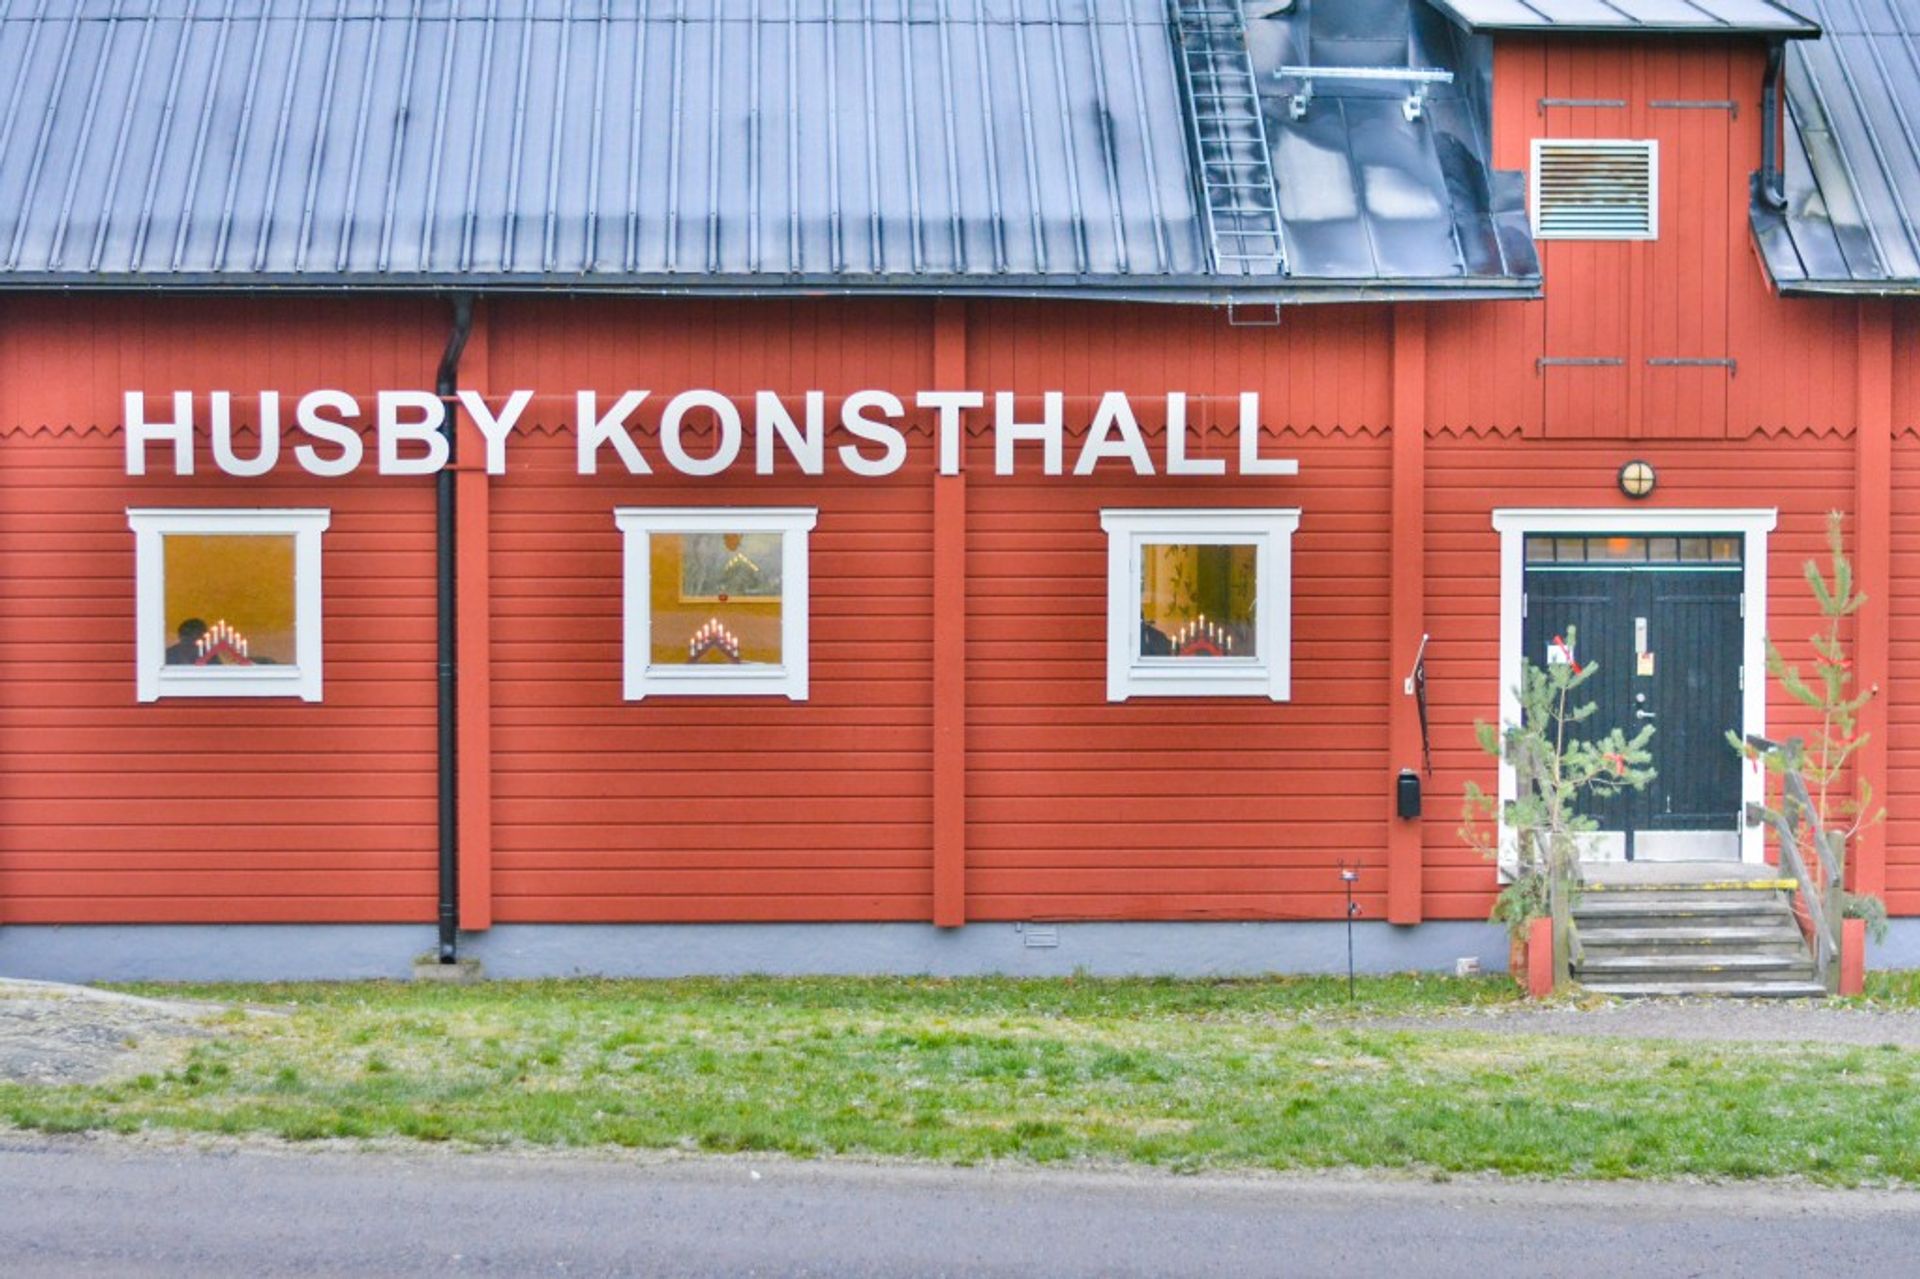 Konsthall = Arthall Bam! You now know Swedish.